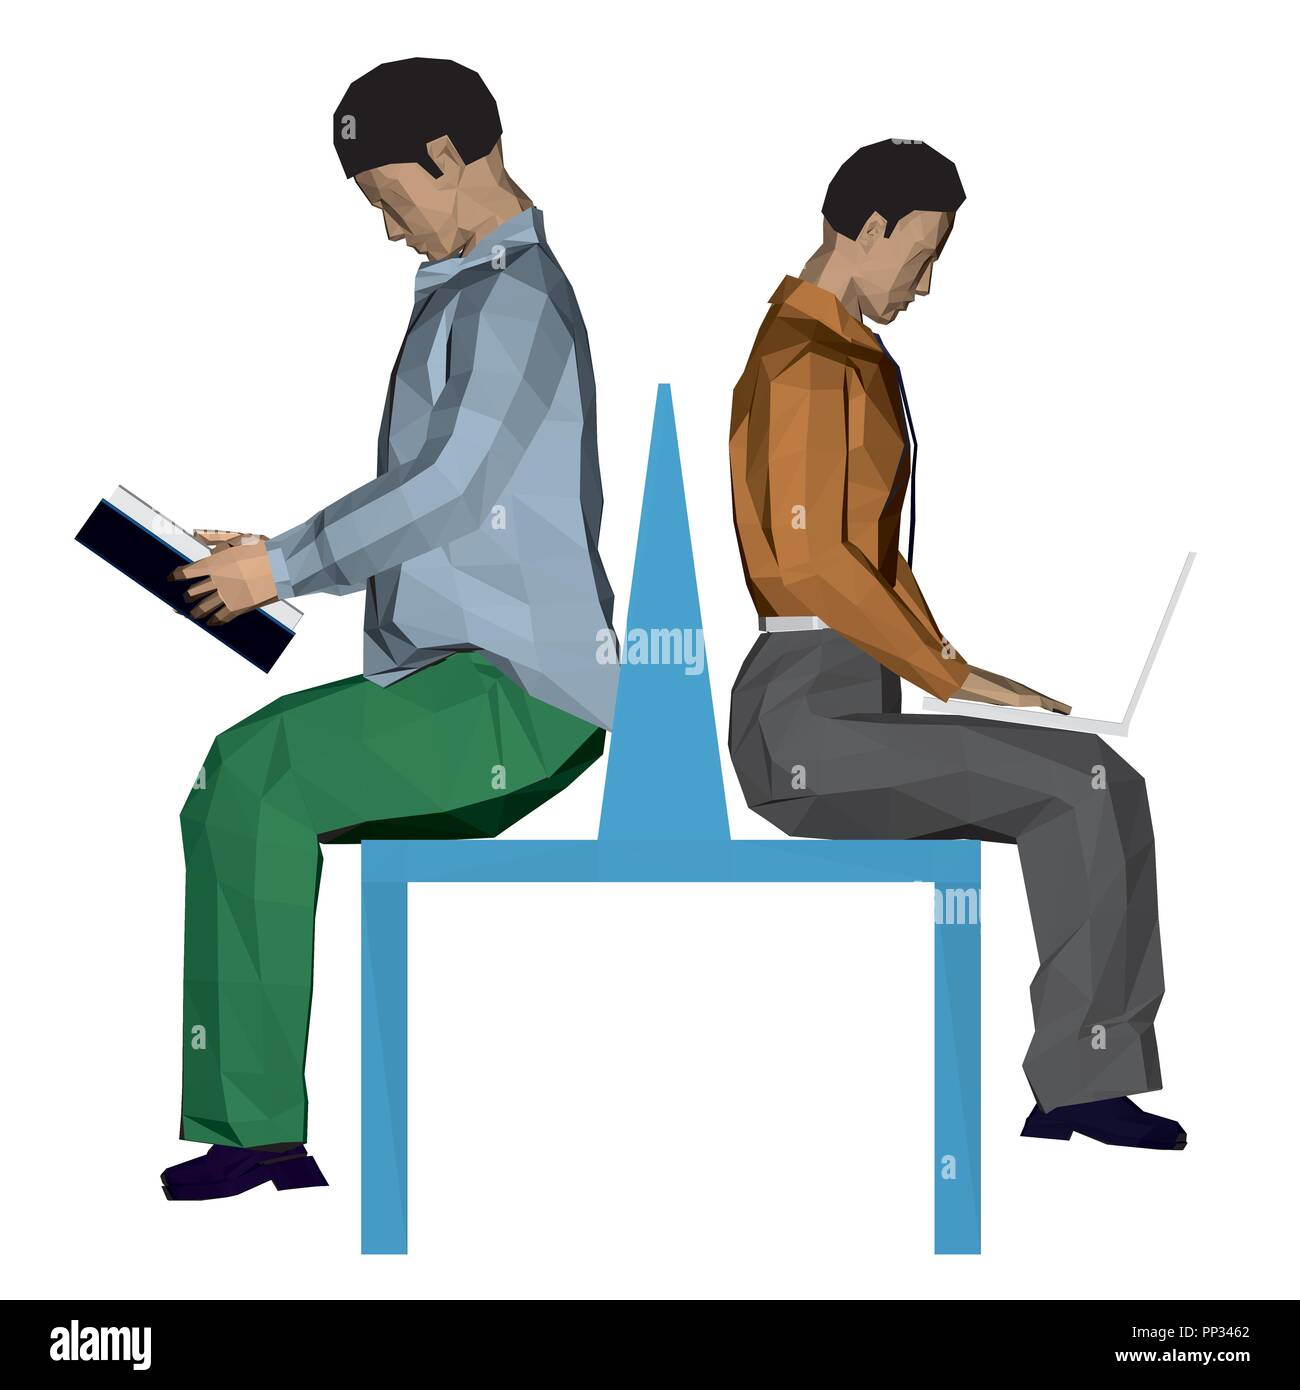 Vector illustration de deux hommes assis sur le banc. L'un est en train de lire un livre et l'autre fonctionne avec un ordinateur portable. 3D. Illustration de Vecteur